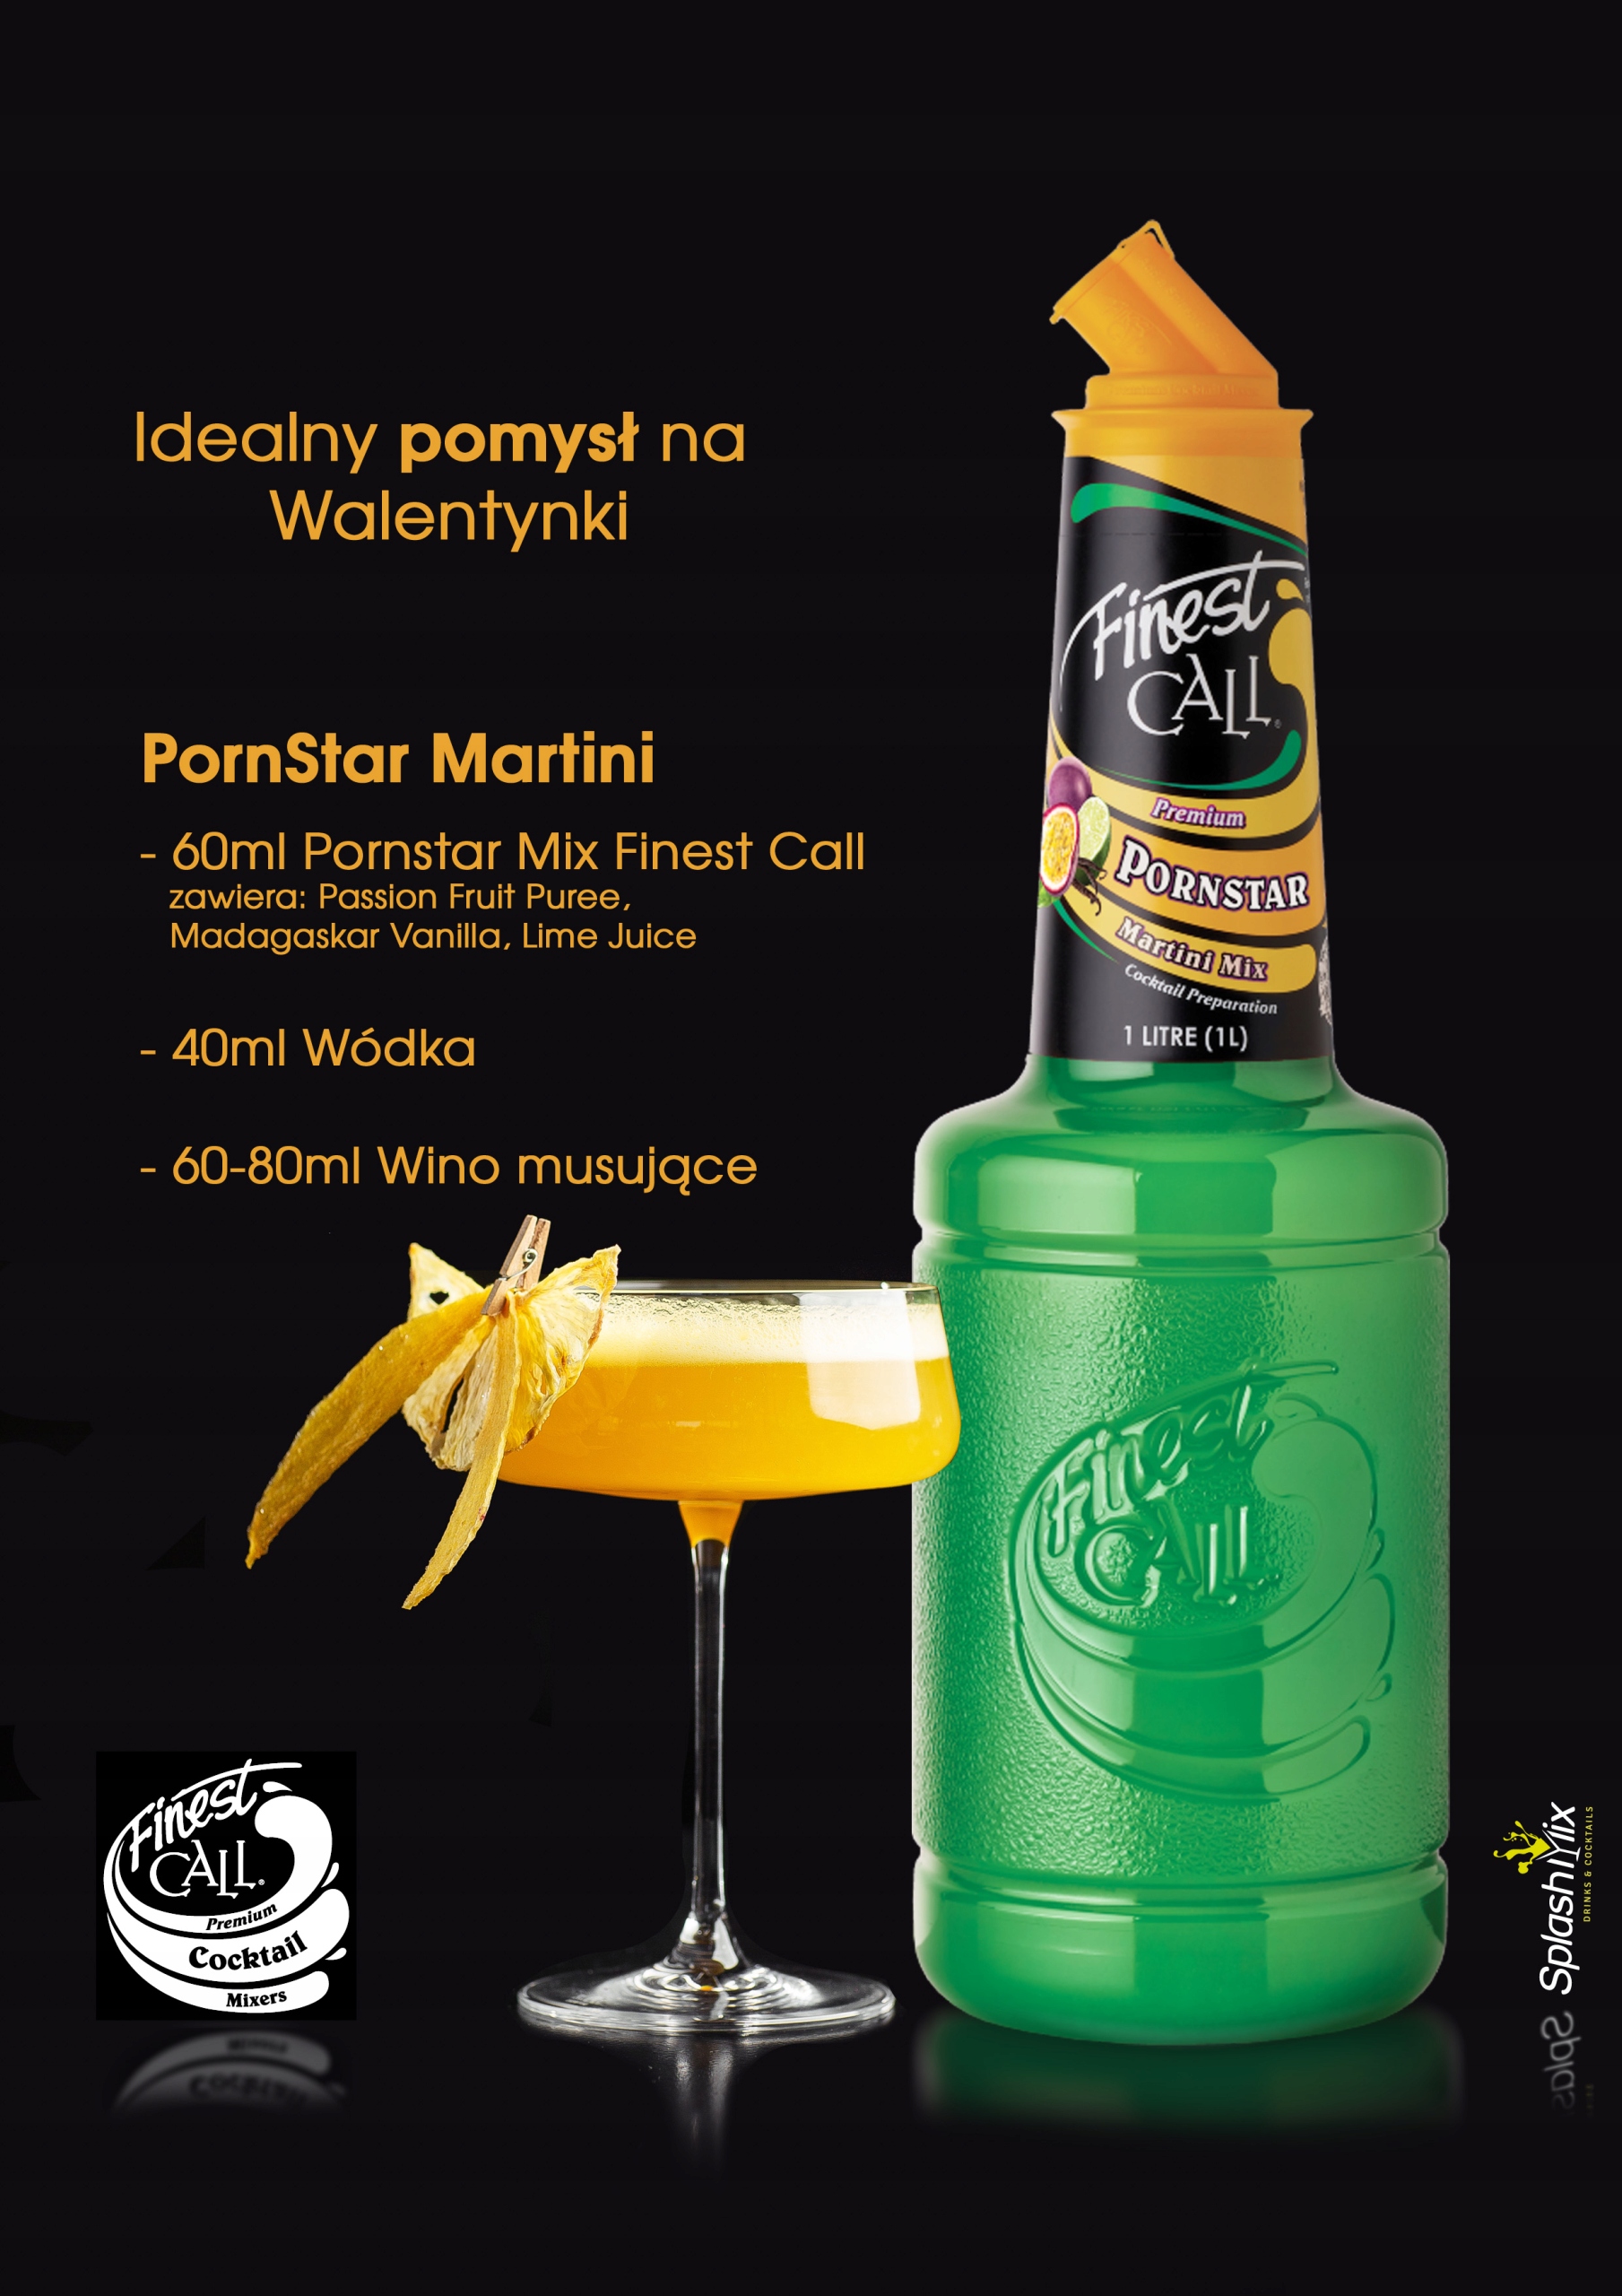 Porn Star Martini Pornstar Marakuja wanilia Finest Produkt nie zawiera drożdży glutenu GMO jajek laktozy nabiału oleju palmowego pszenicy soi